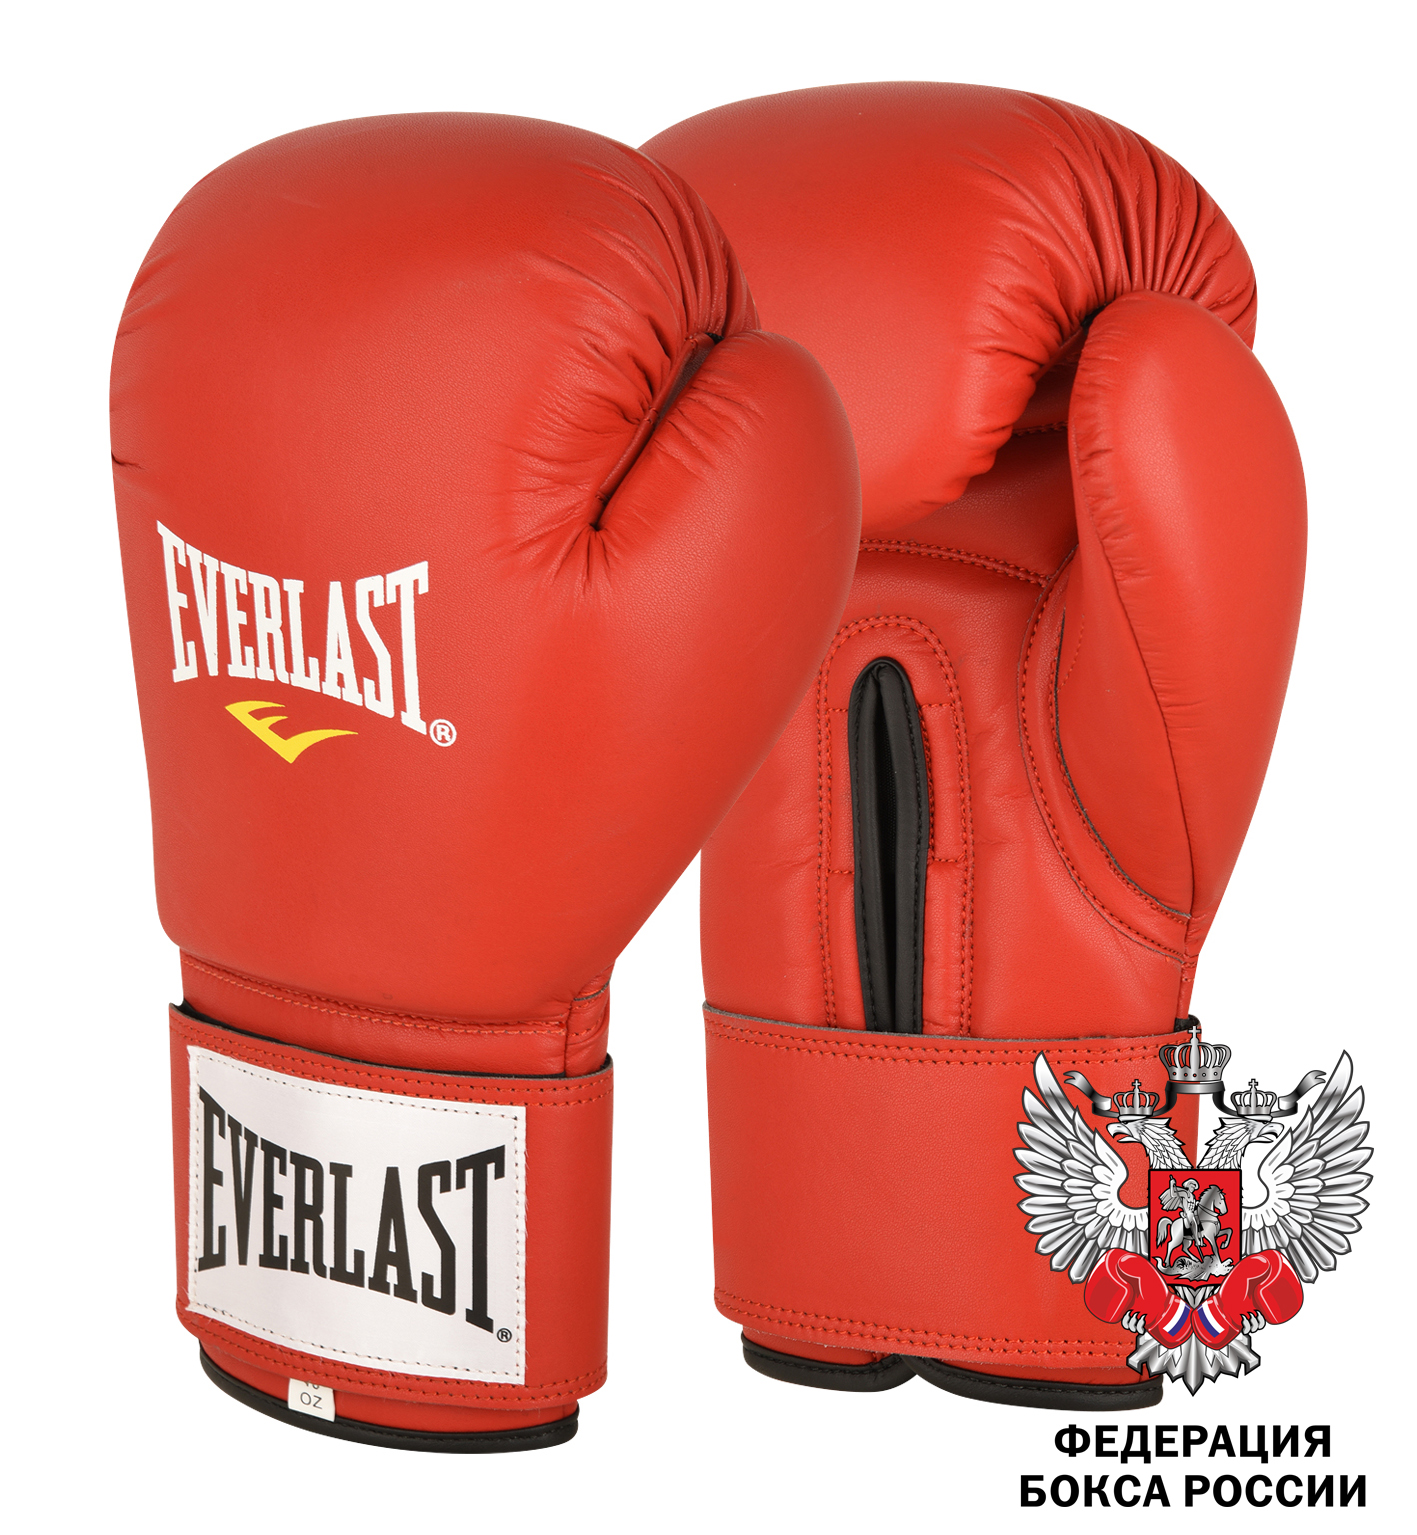  Боксерские перчатки Everlast Amateur Cometition PU красные 